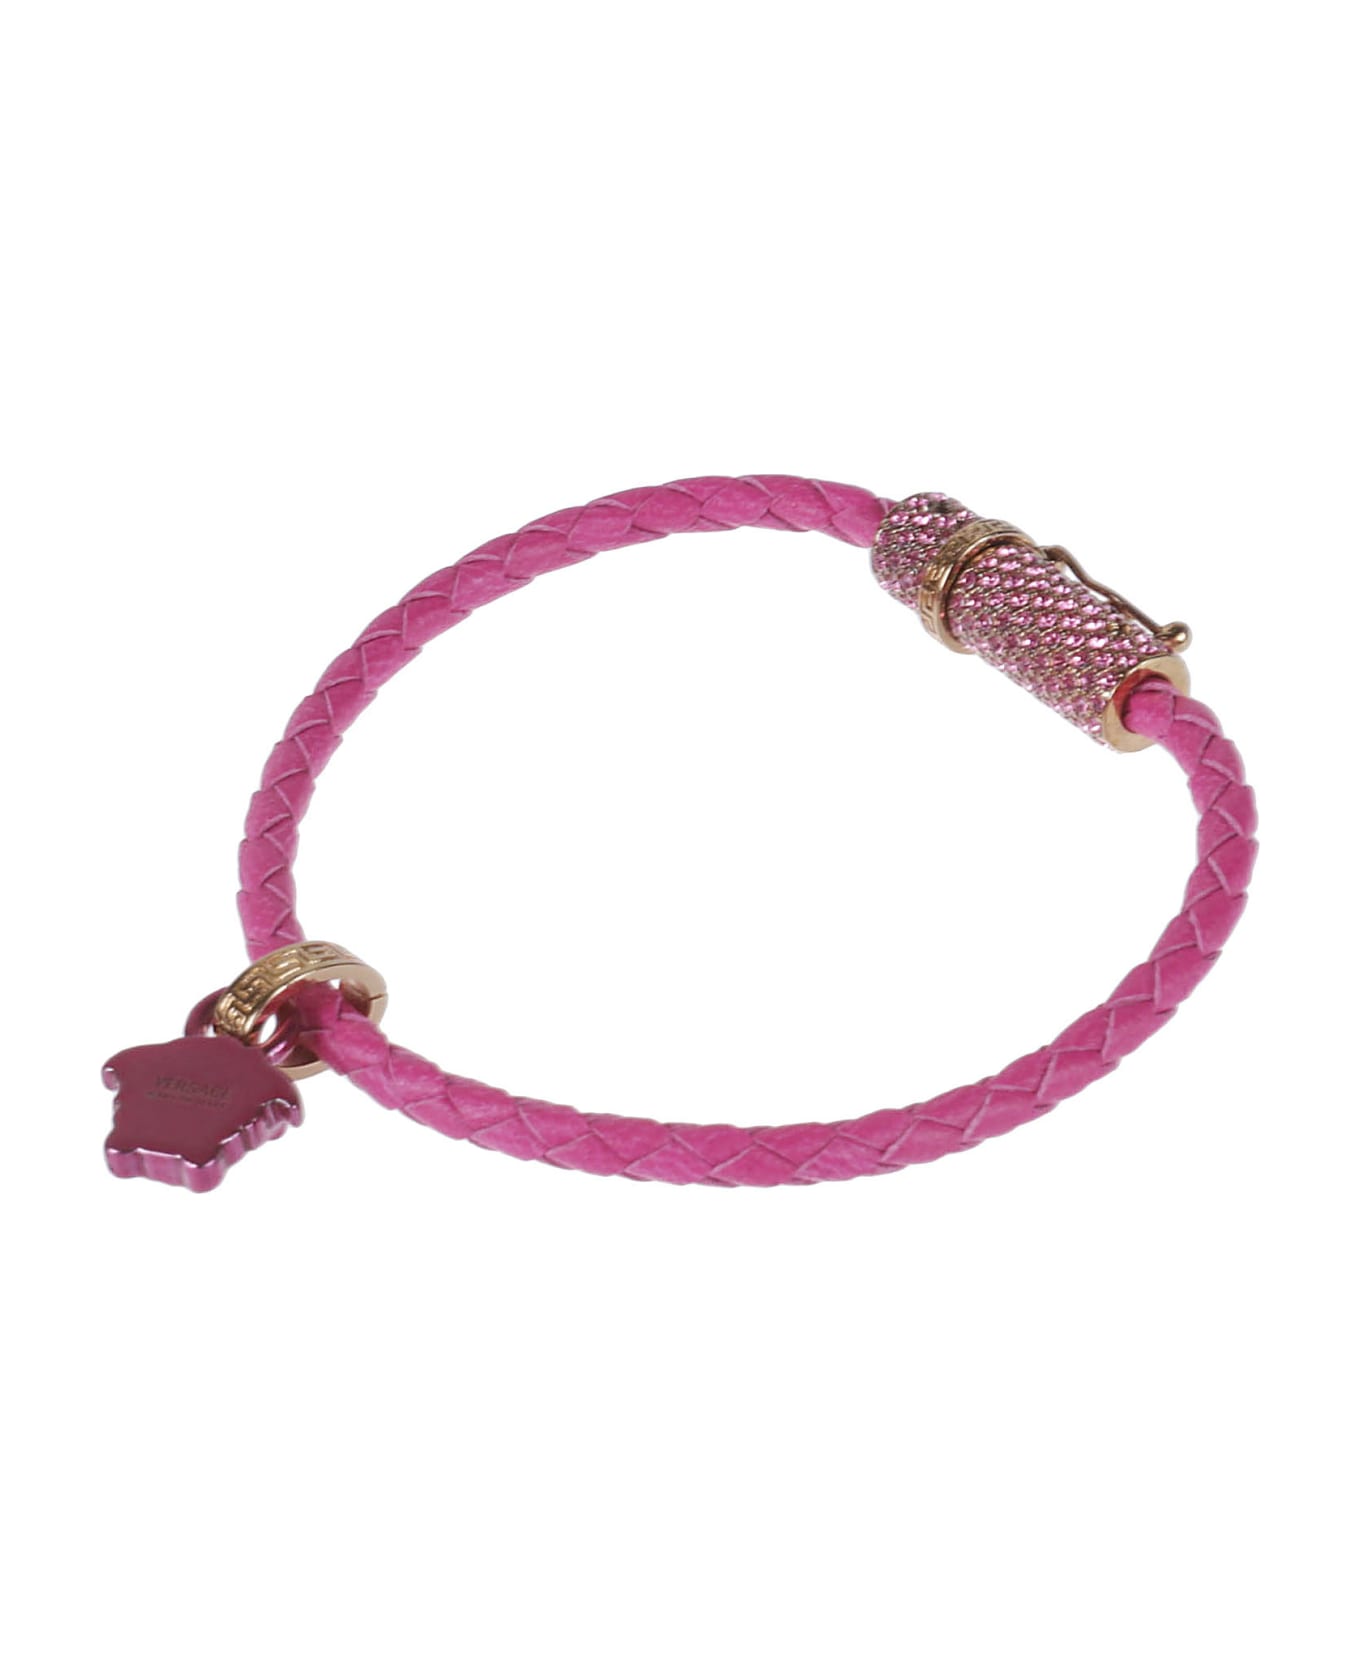 Versace Medusa Bracelet - Glossy Pink